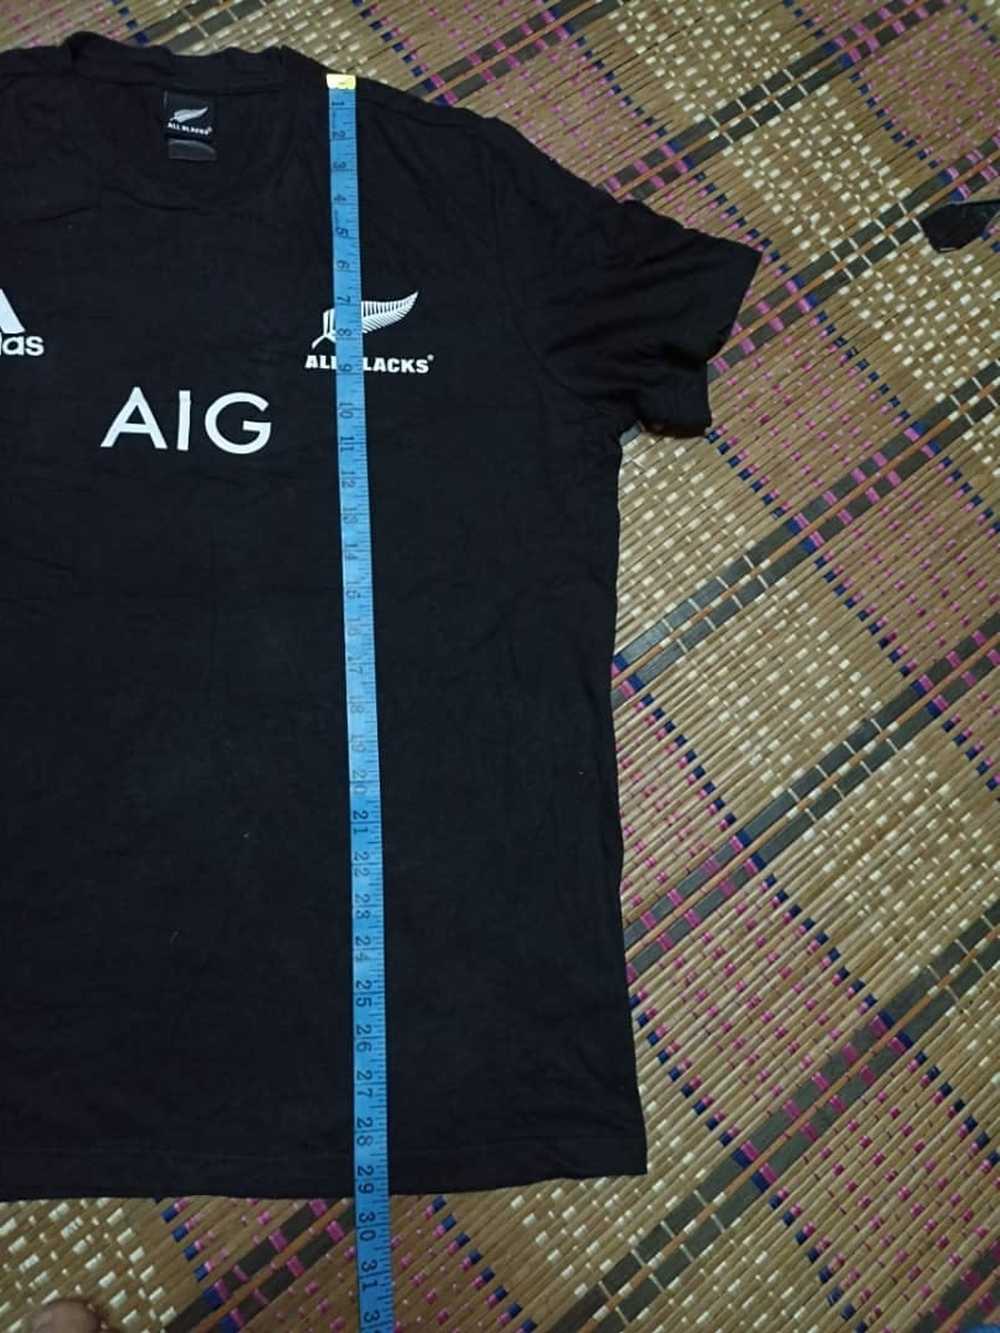 Adidas × All Black Adidas All Black AIG - image 11